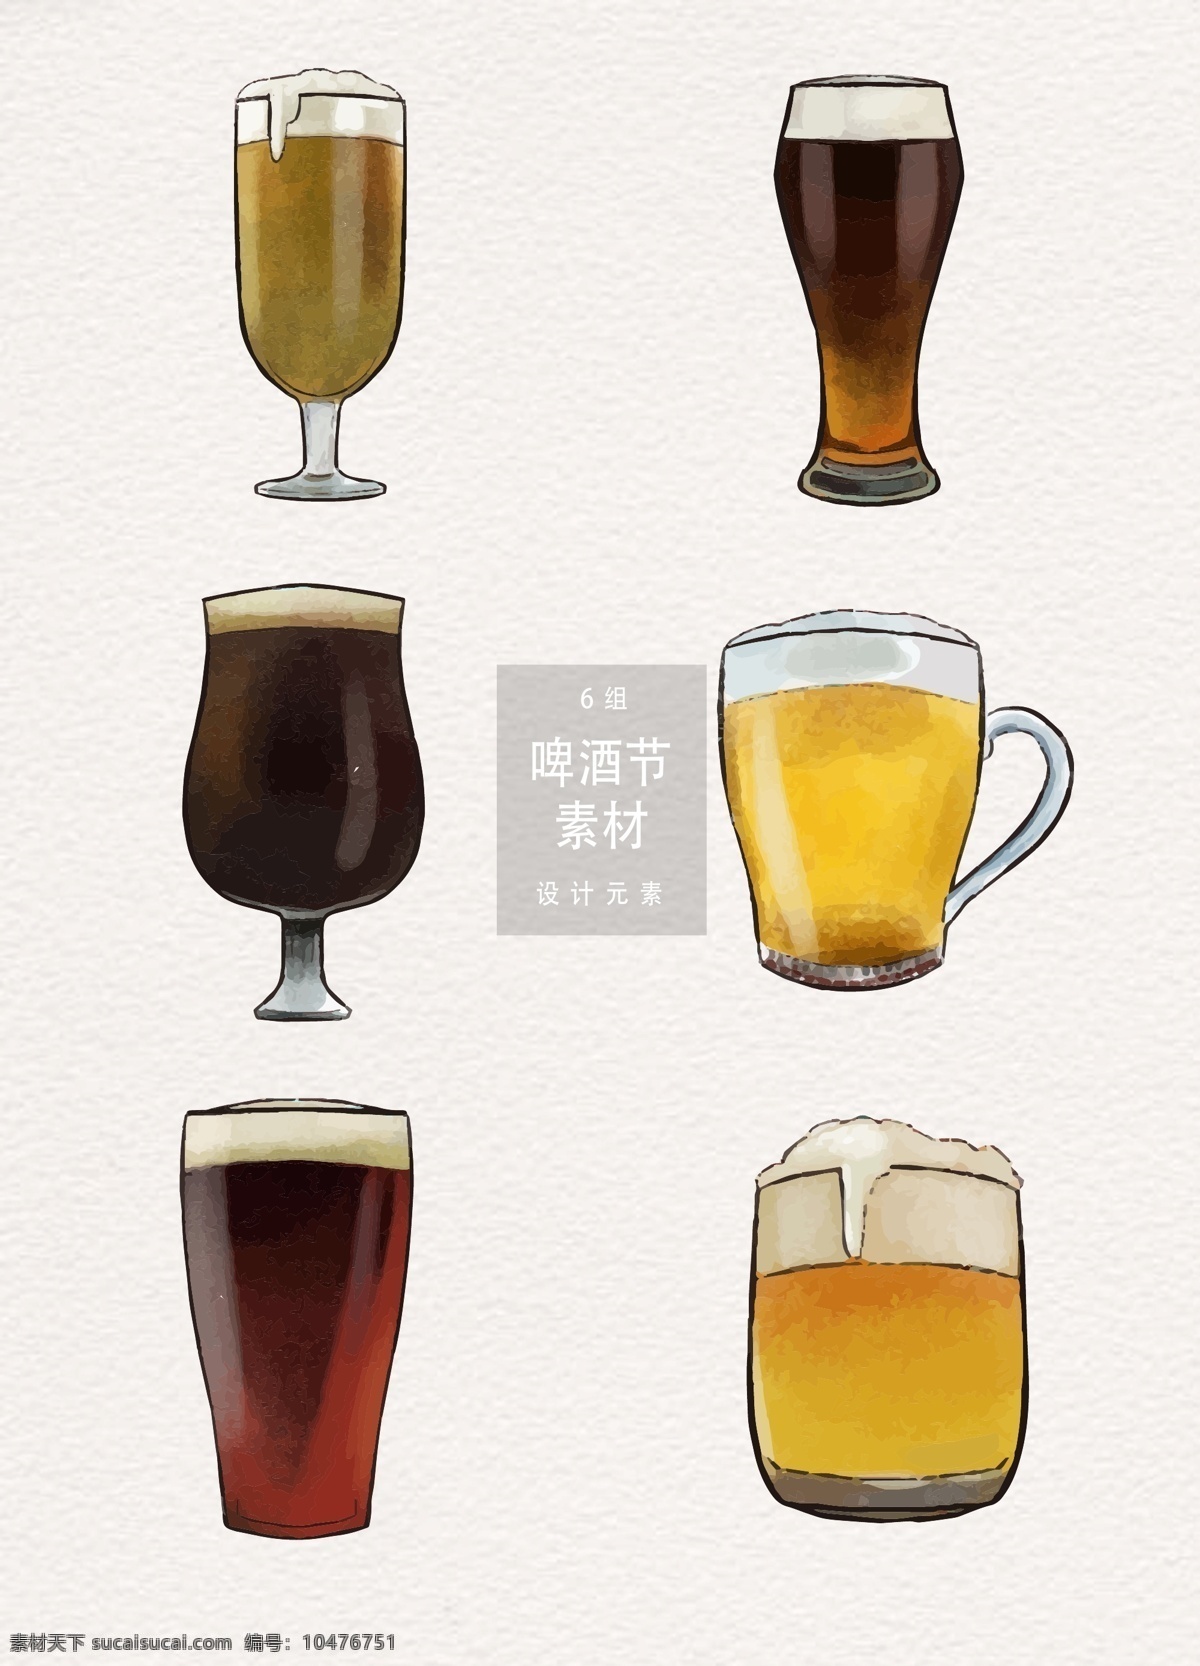 啤酒素材 啤酒 矢量素材 手绘插画 啤酒节 节庆 手绘啤酒 啤酒矢量 青岛 国际 啤酒插画